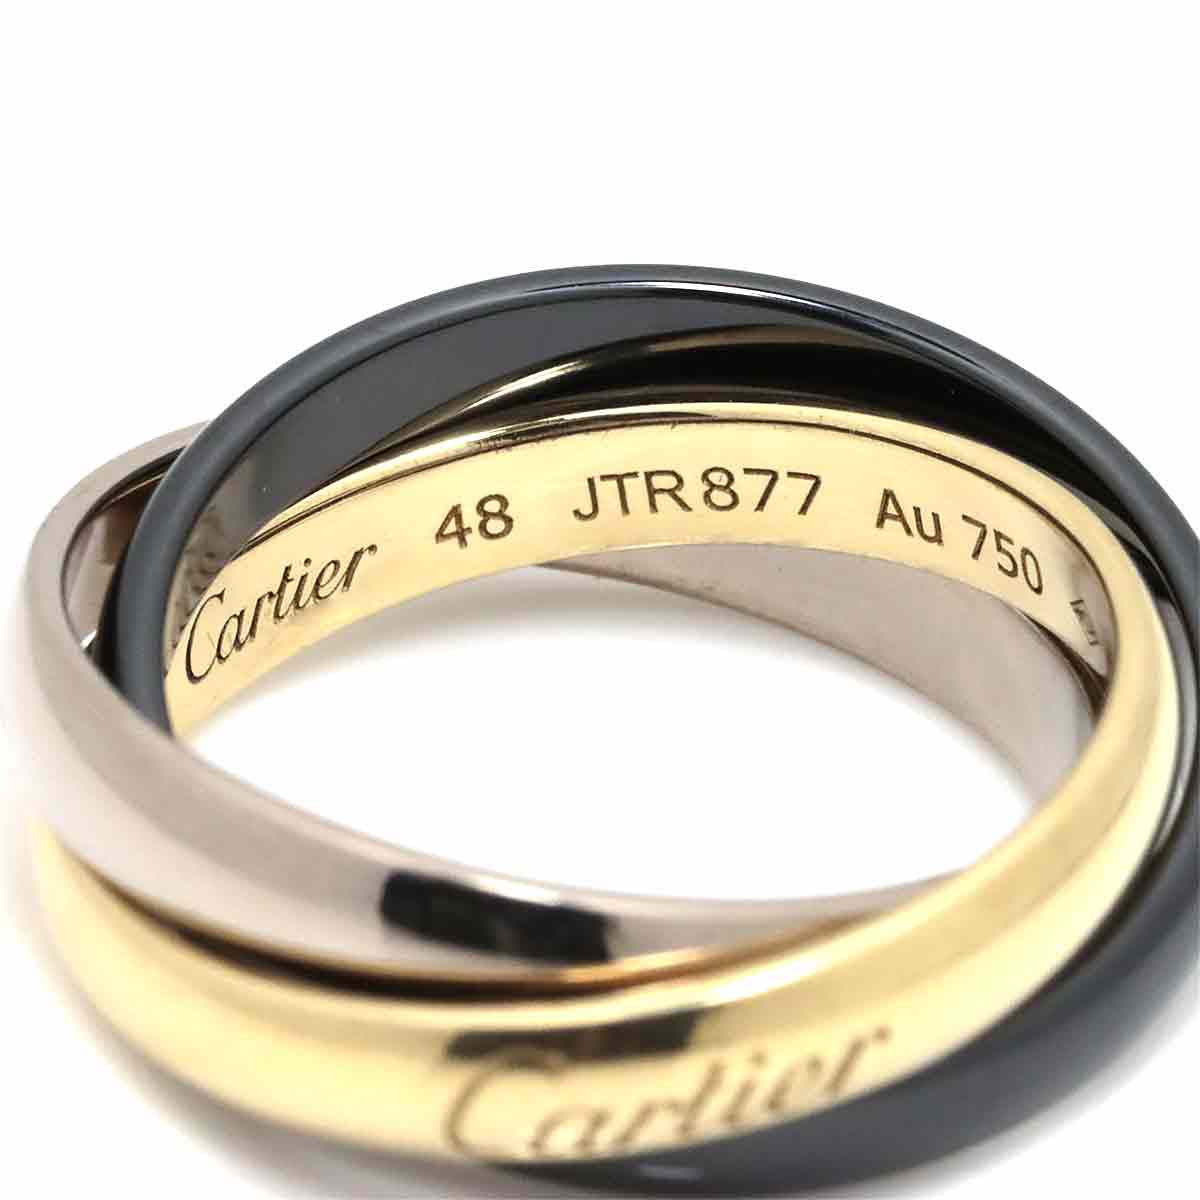 【新品同様】 カルティエ Cartier トリニティ SM #48 リング セラミック K18 YG WG 3連 750 ゴールド 指輪  Trinity Ring【証明書付き】【中古】 | VINTAGE LOVER PURPOSE